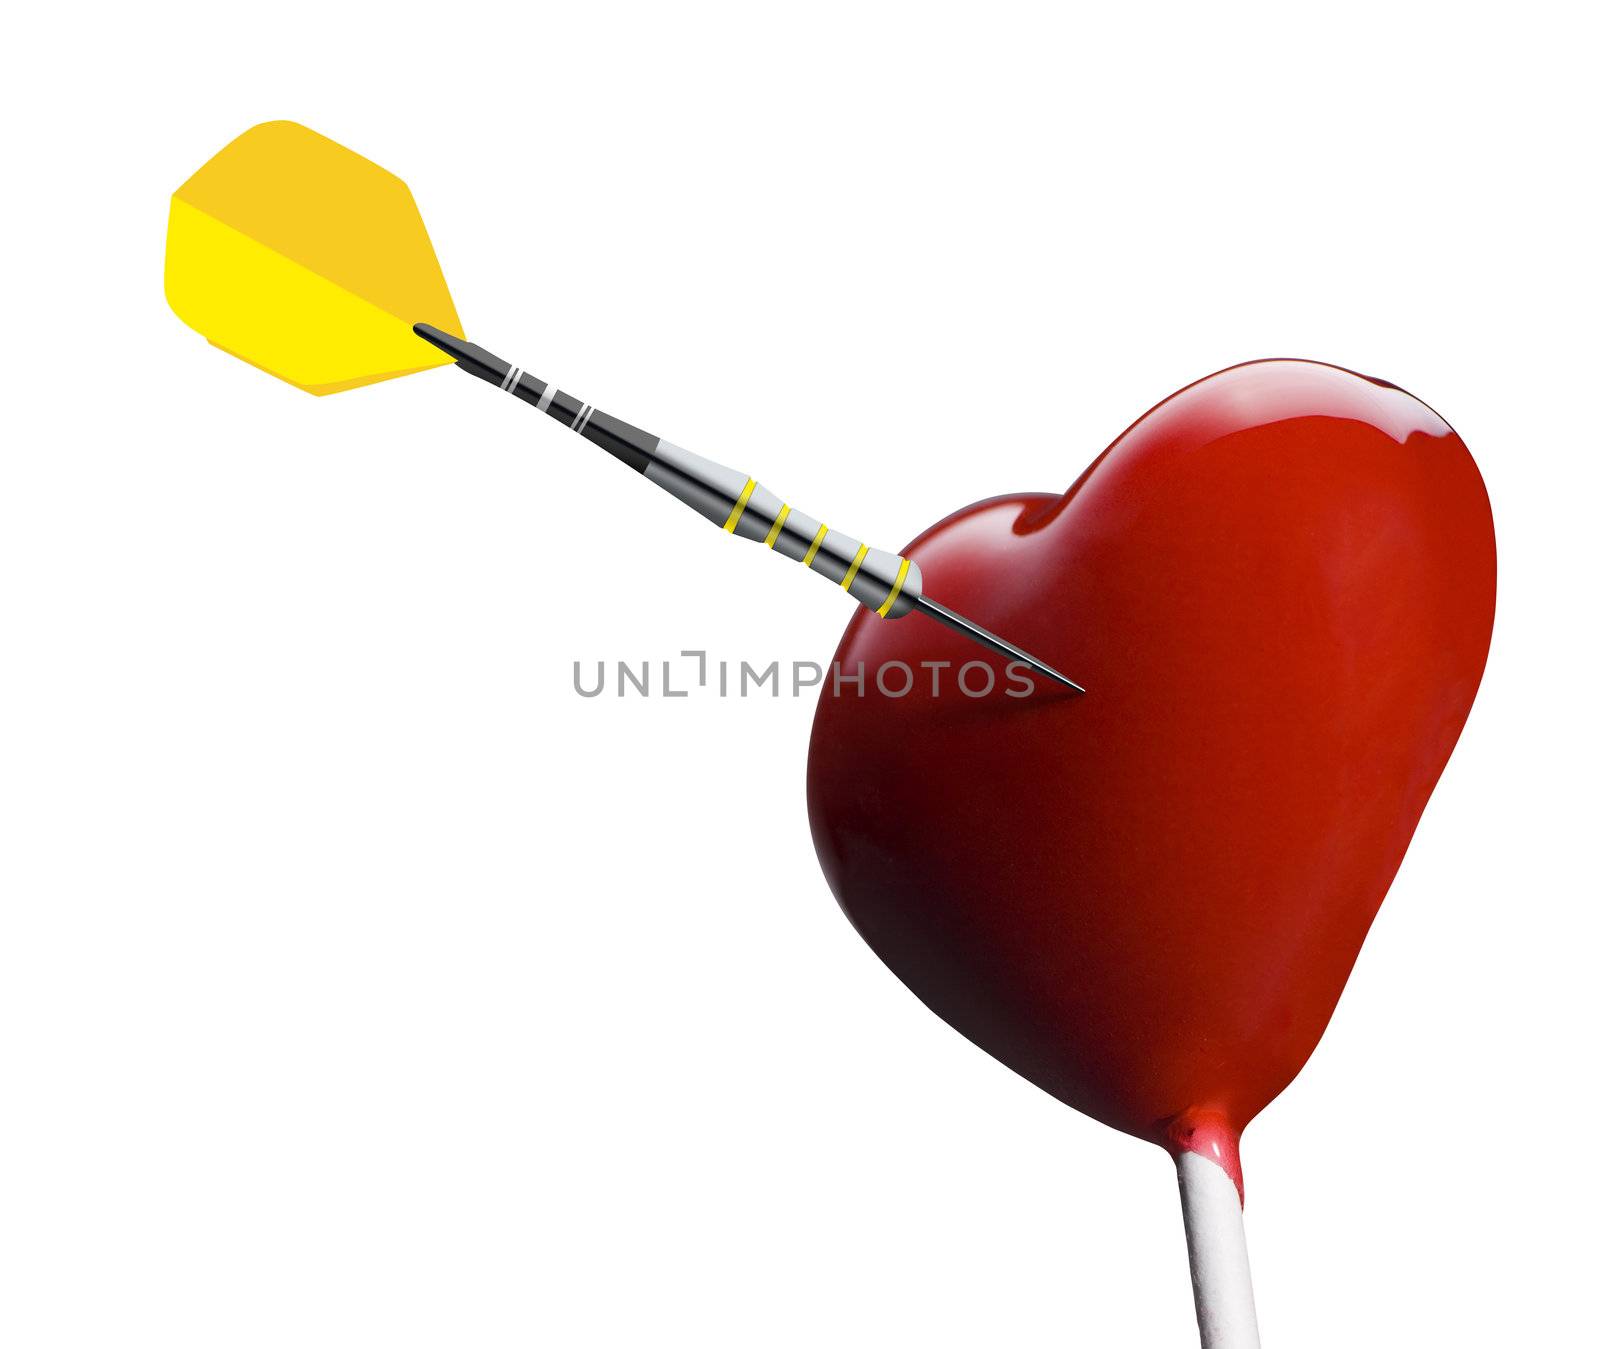 Sucette en forme de coeur touché par une flèche
Heart-shaped lollipop hit by an arrow